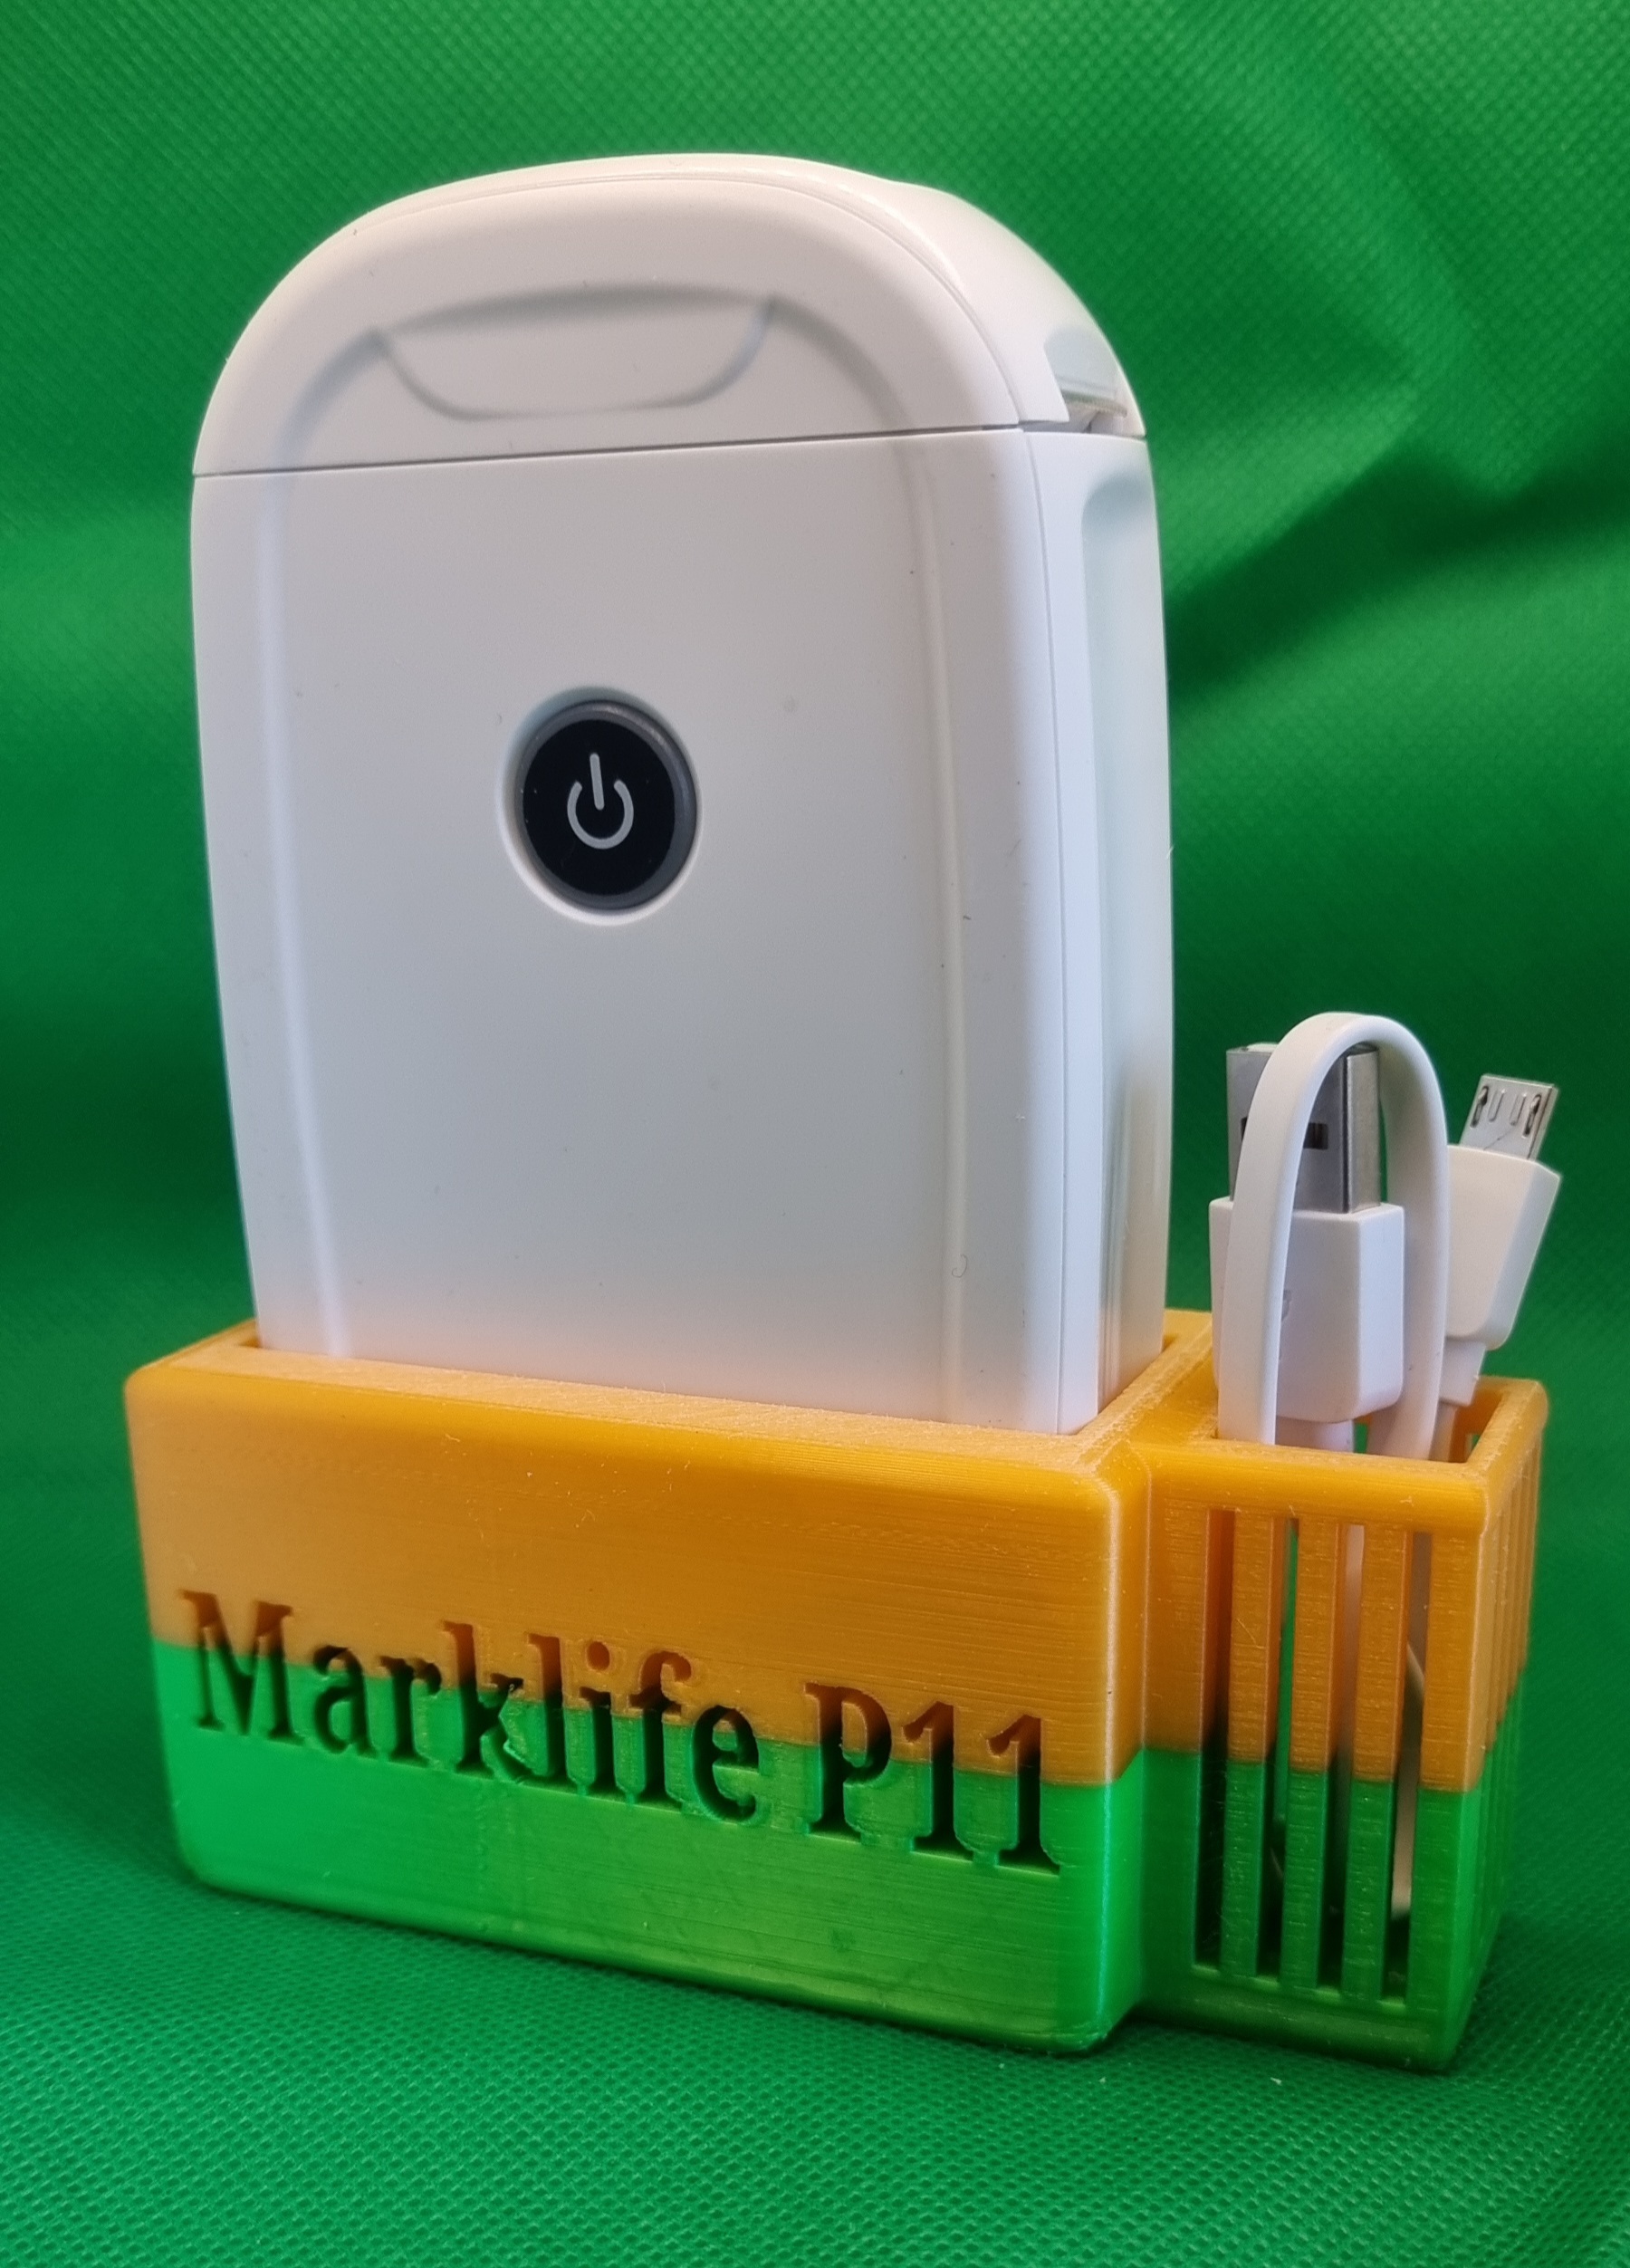 Halterung Marklife P11